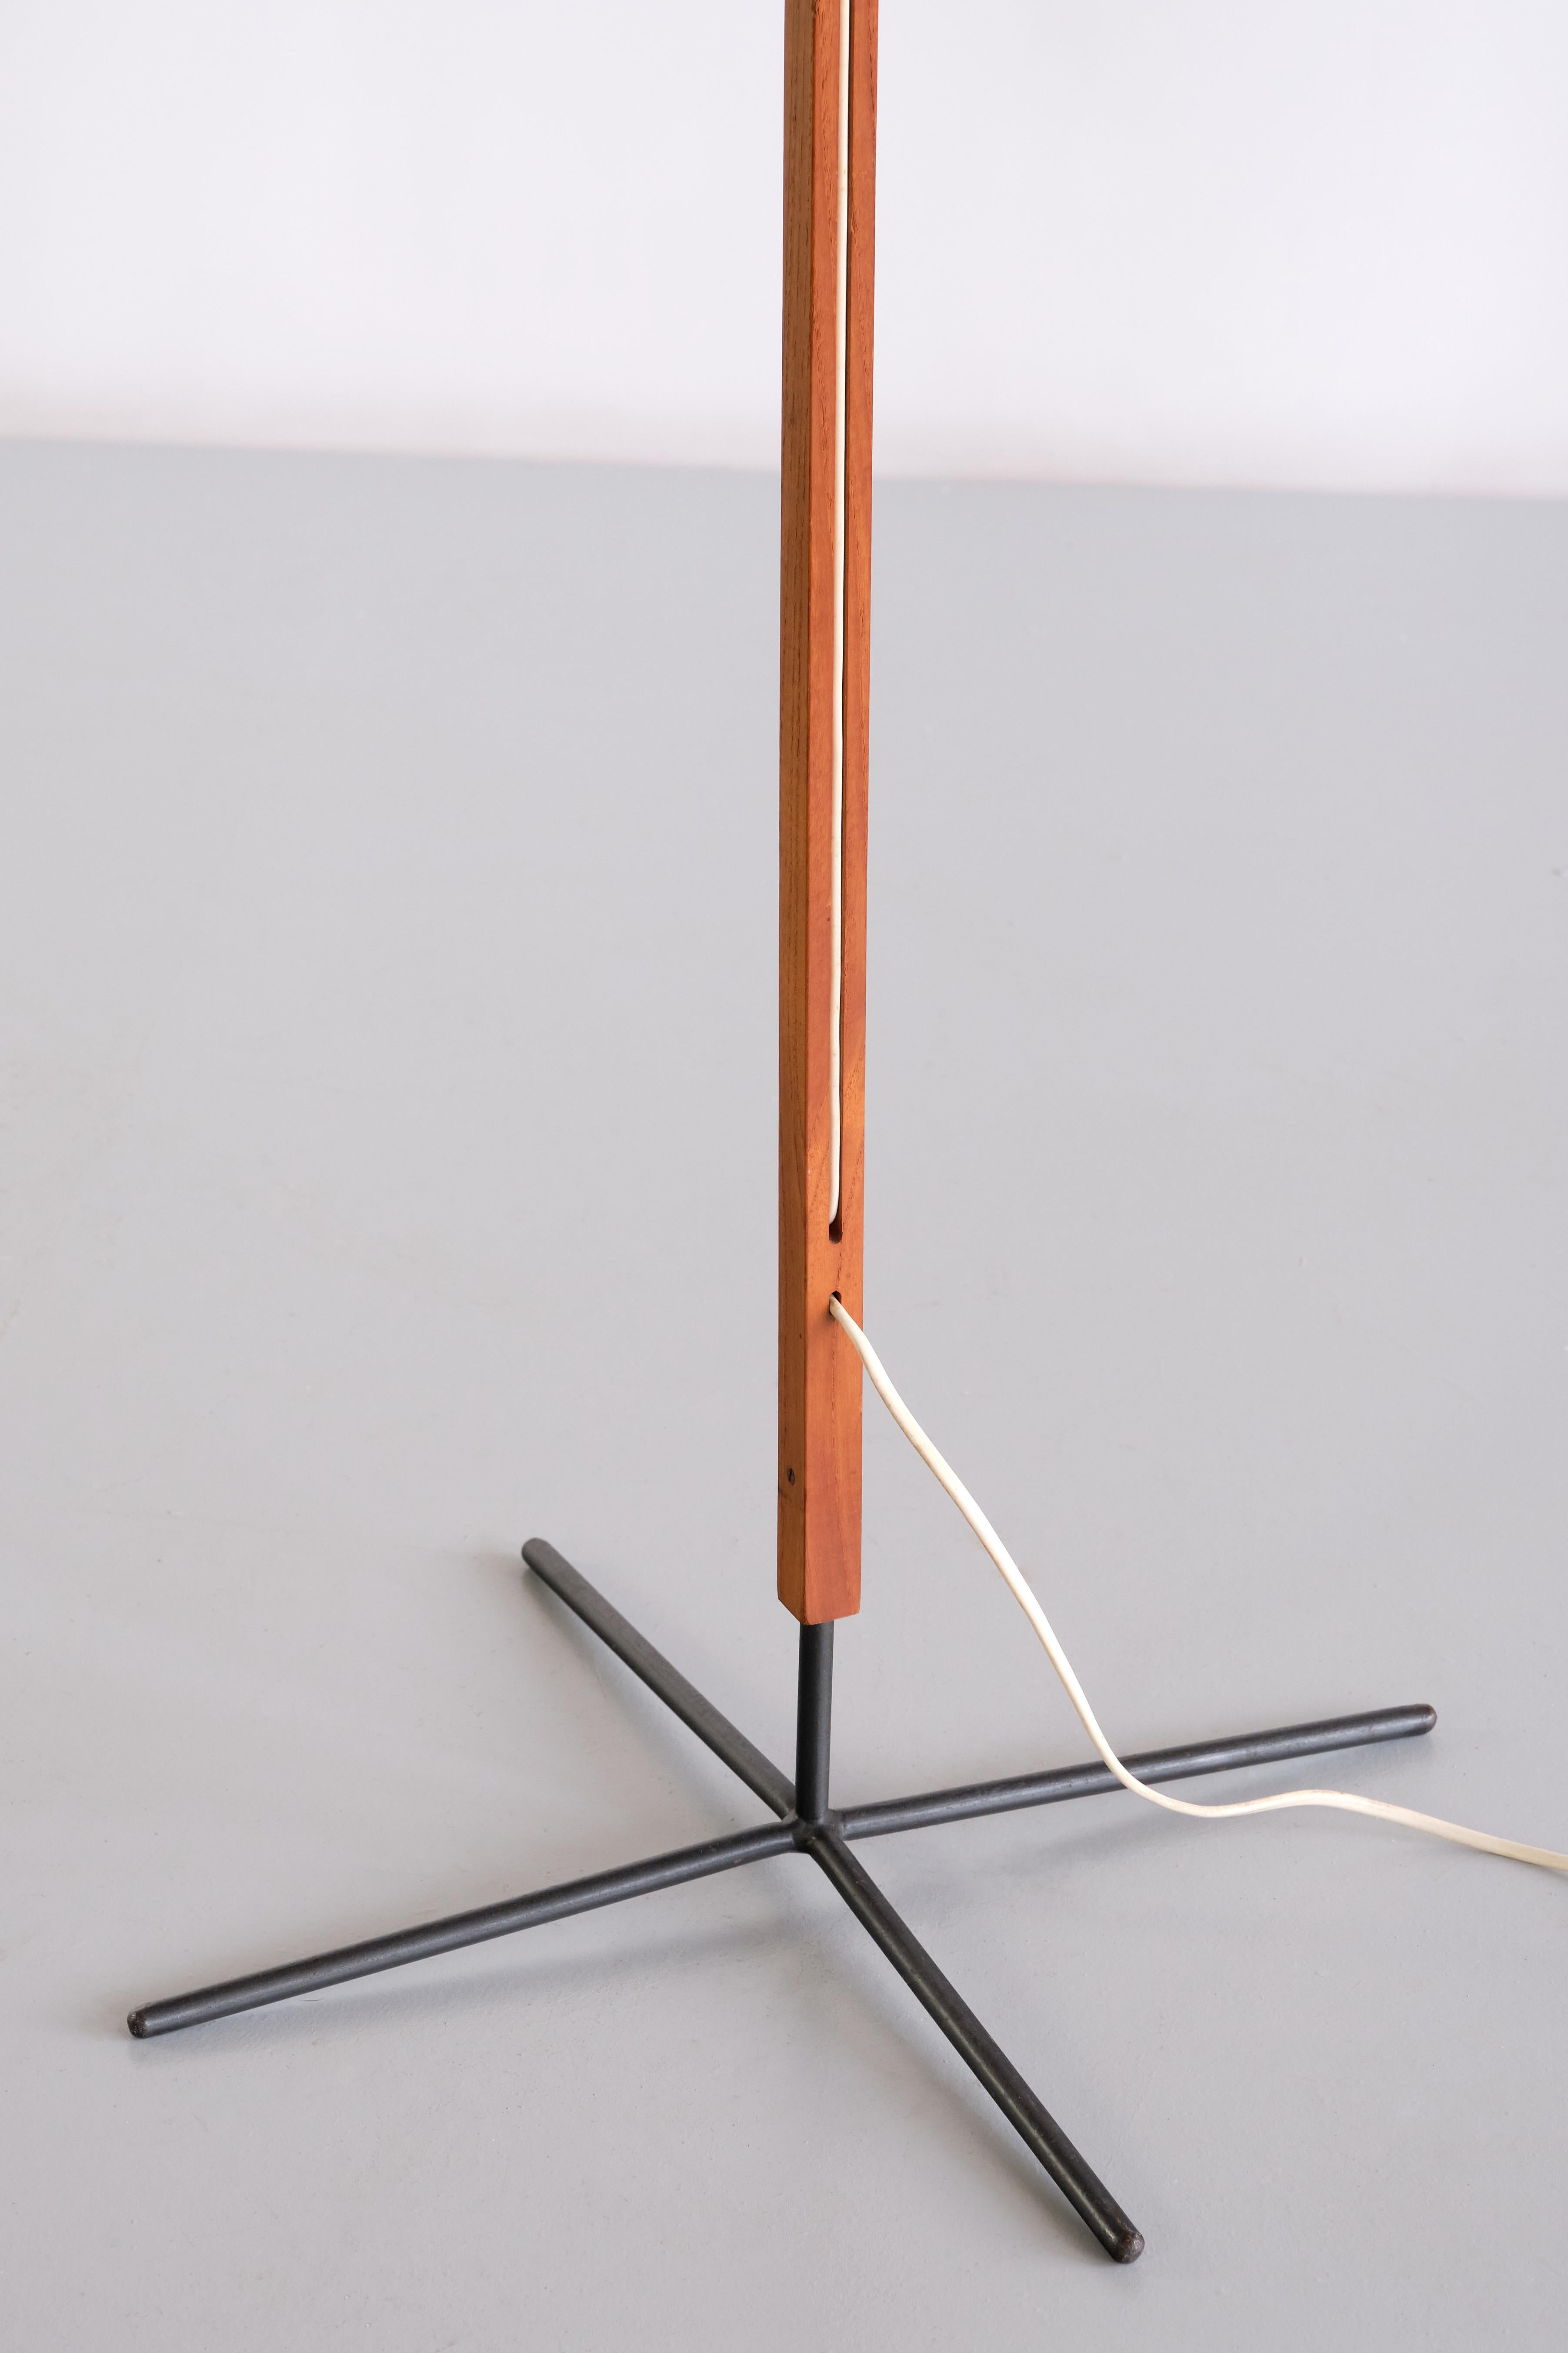 Scandinavian Modern Hans Agne Jakobsson 'G35' Floor Lamp in Teak and Iron, Markaryd, Sweden, 1960s For Sale